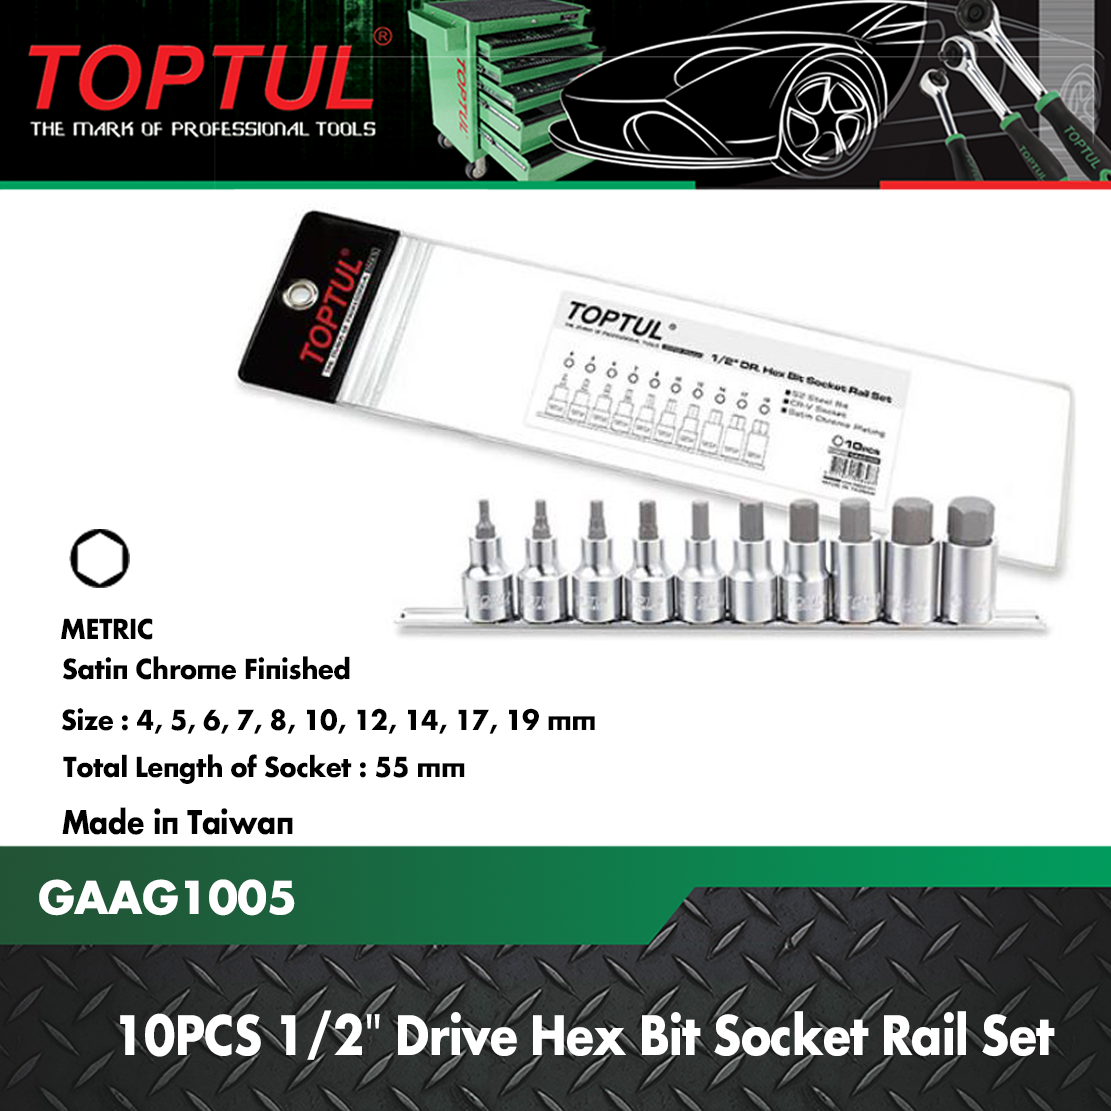 10PCS 1/2 DR. Hex Bit Socket Rail Set - TOPTUL The Mark of